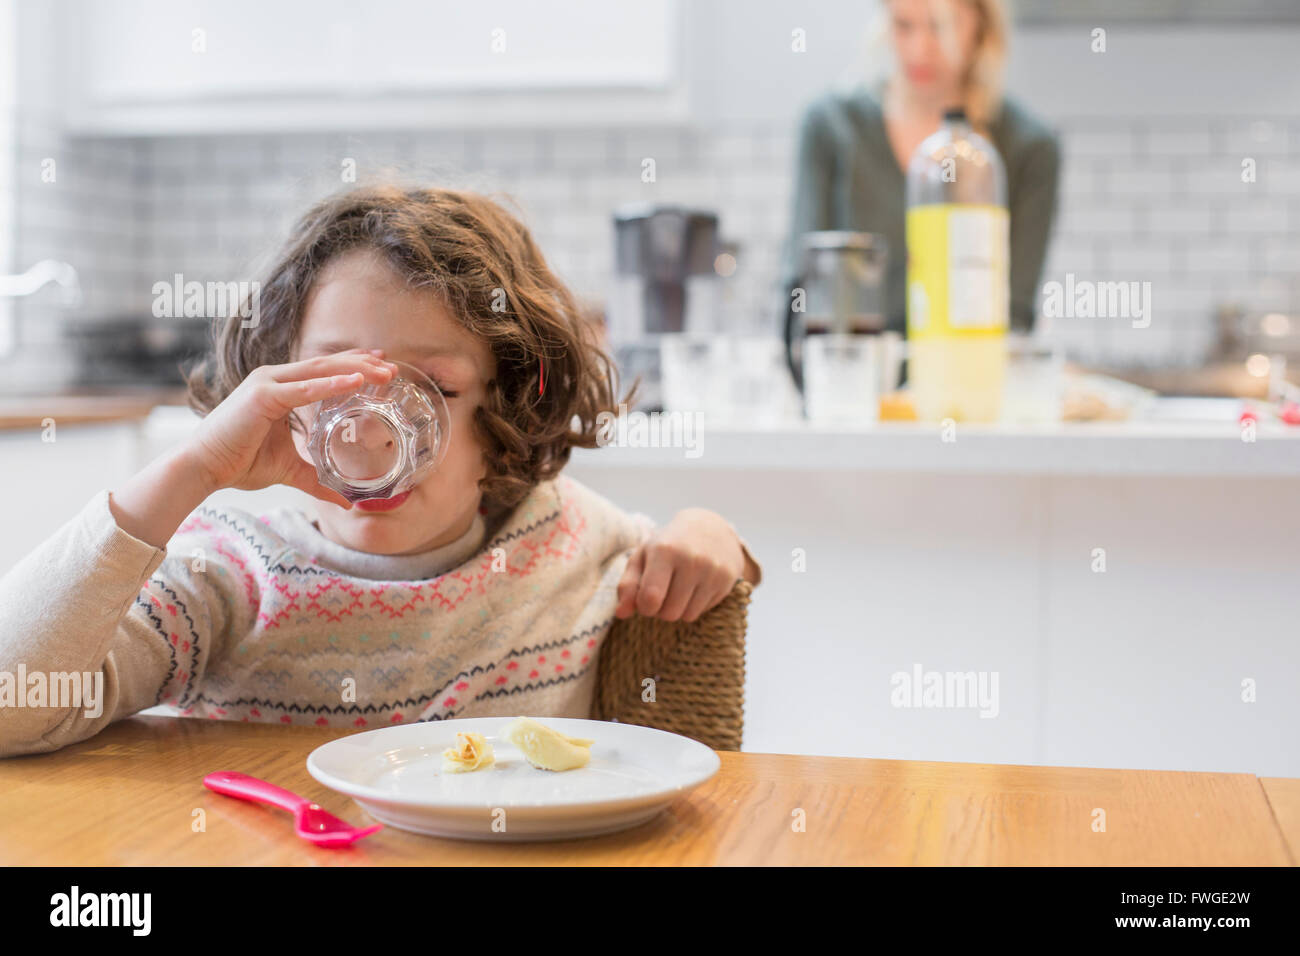 Ein Kind sitzt an einem Tisch, trinken aus einem Glas, einer Frau, hinter ihr in der heimischen Küche. Stockfoto